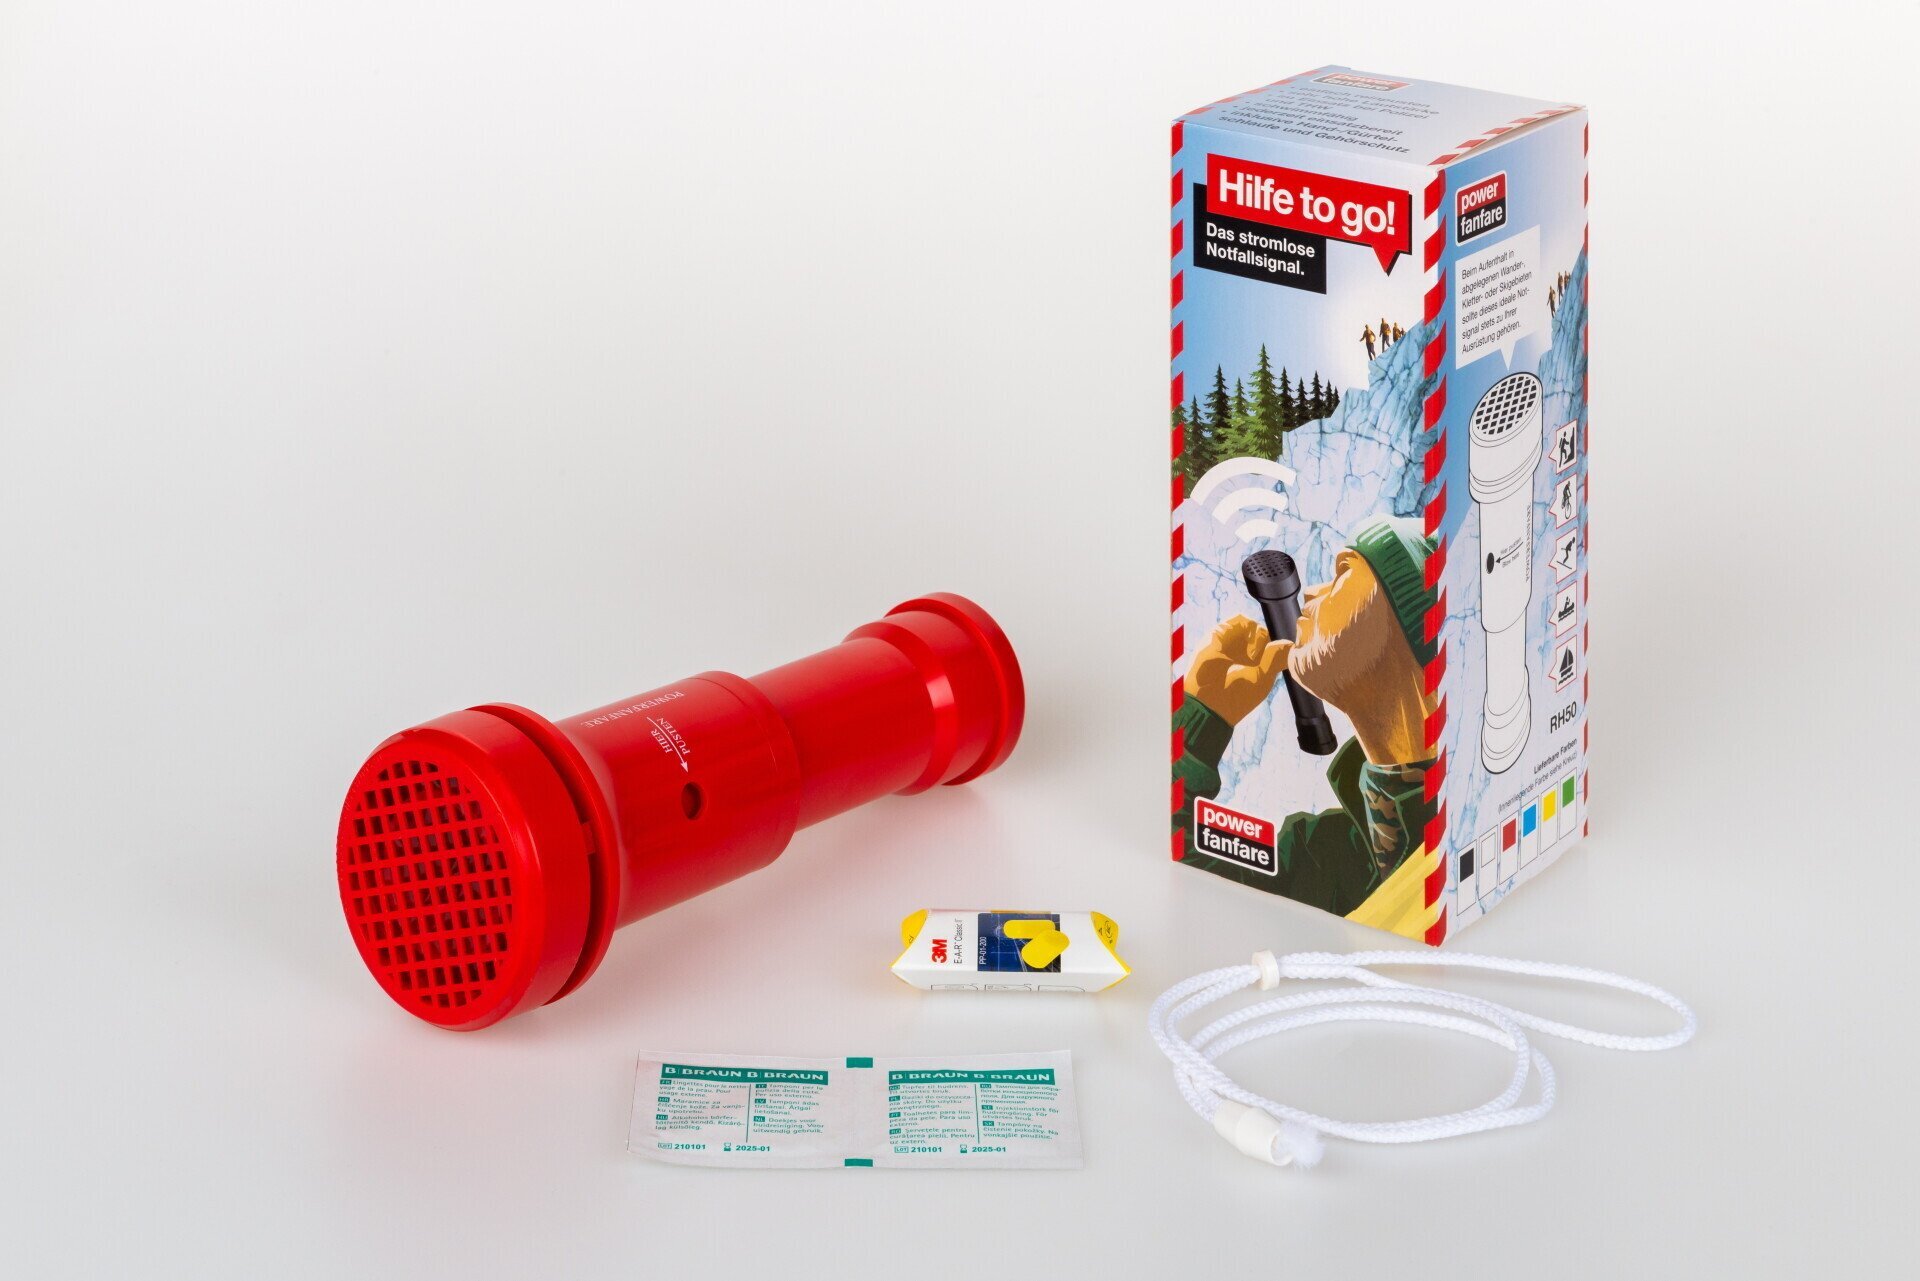 Notsignal Powerfanfare RH50 Standard mit Halteband weiß, 2 x Alco-Hygiene Pads, 1 x Gehörschutz